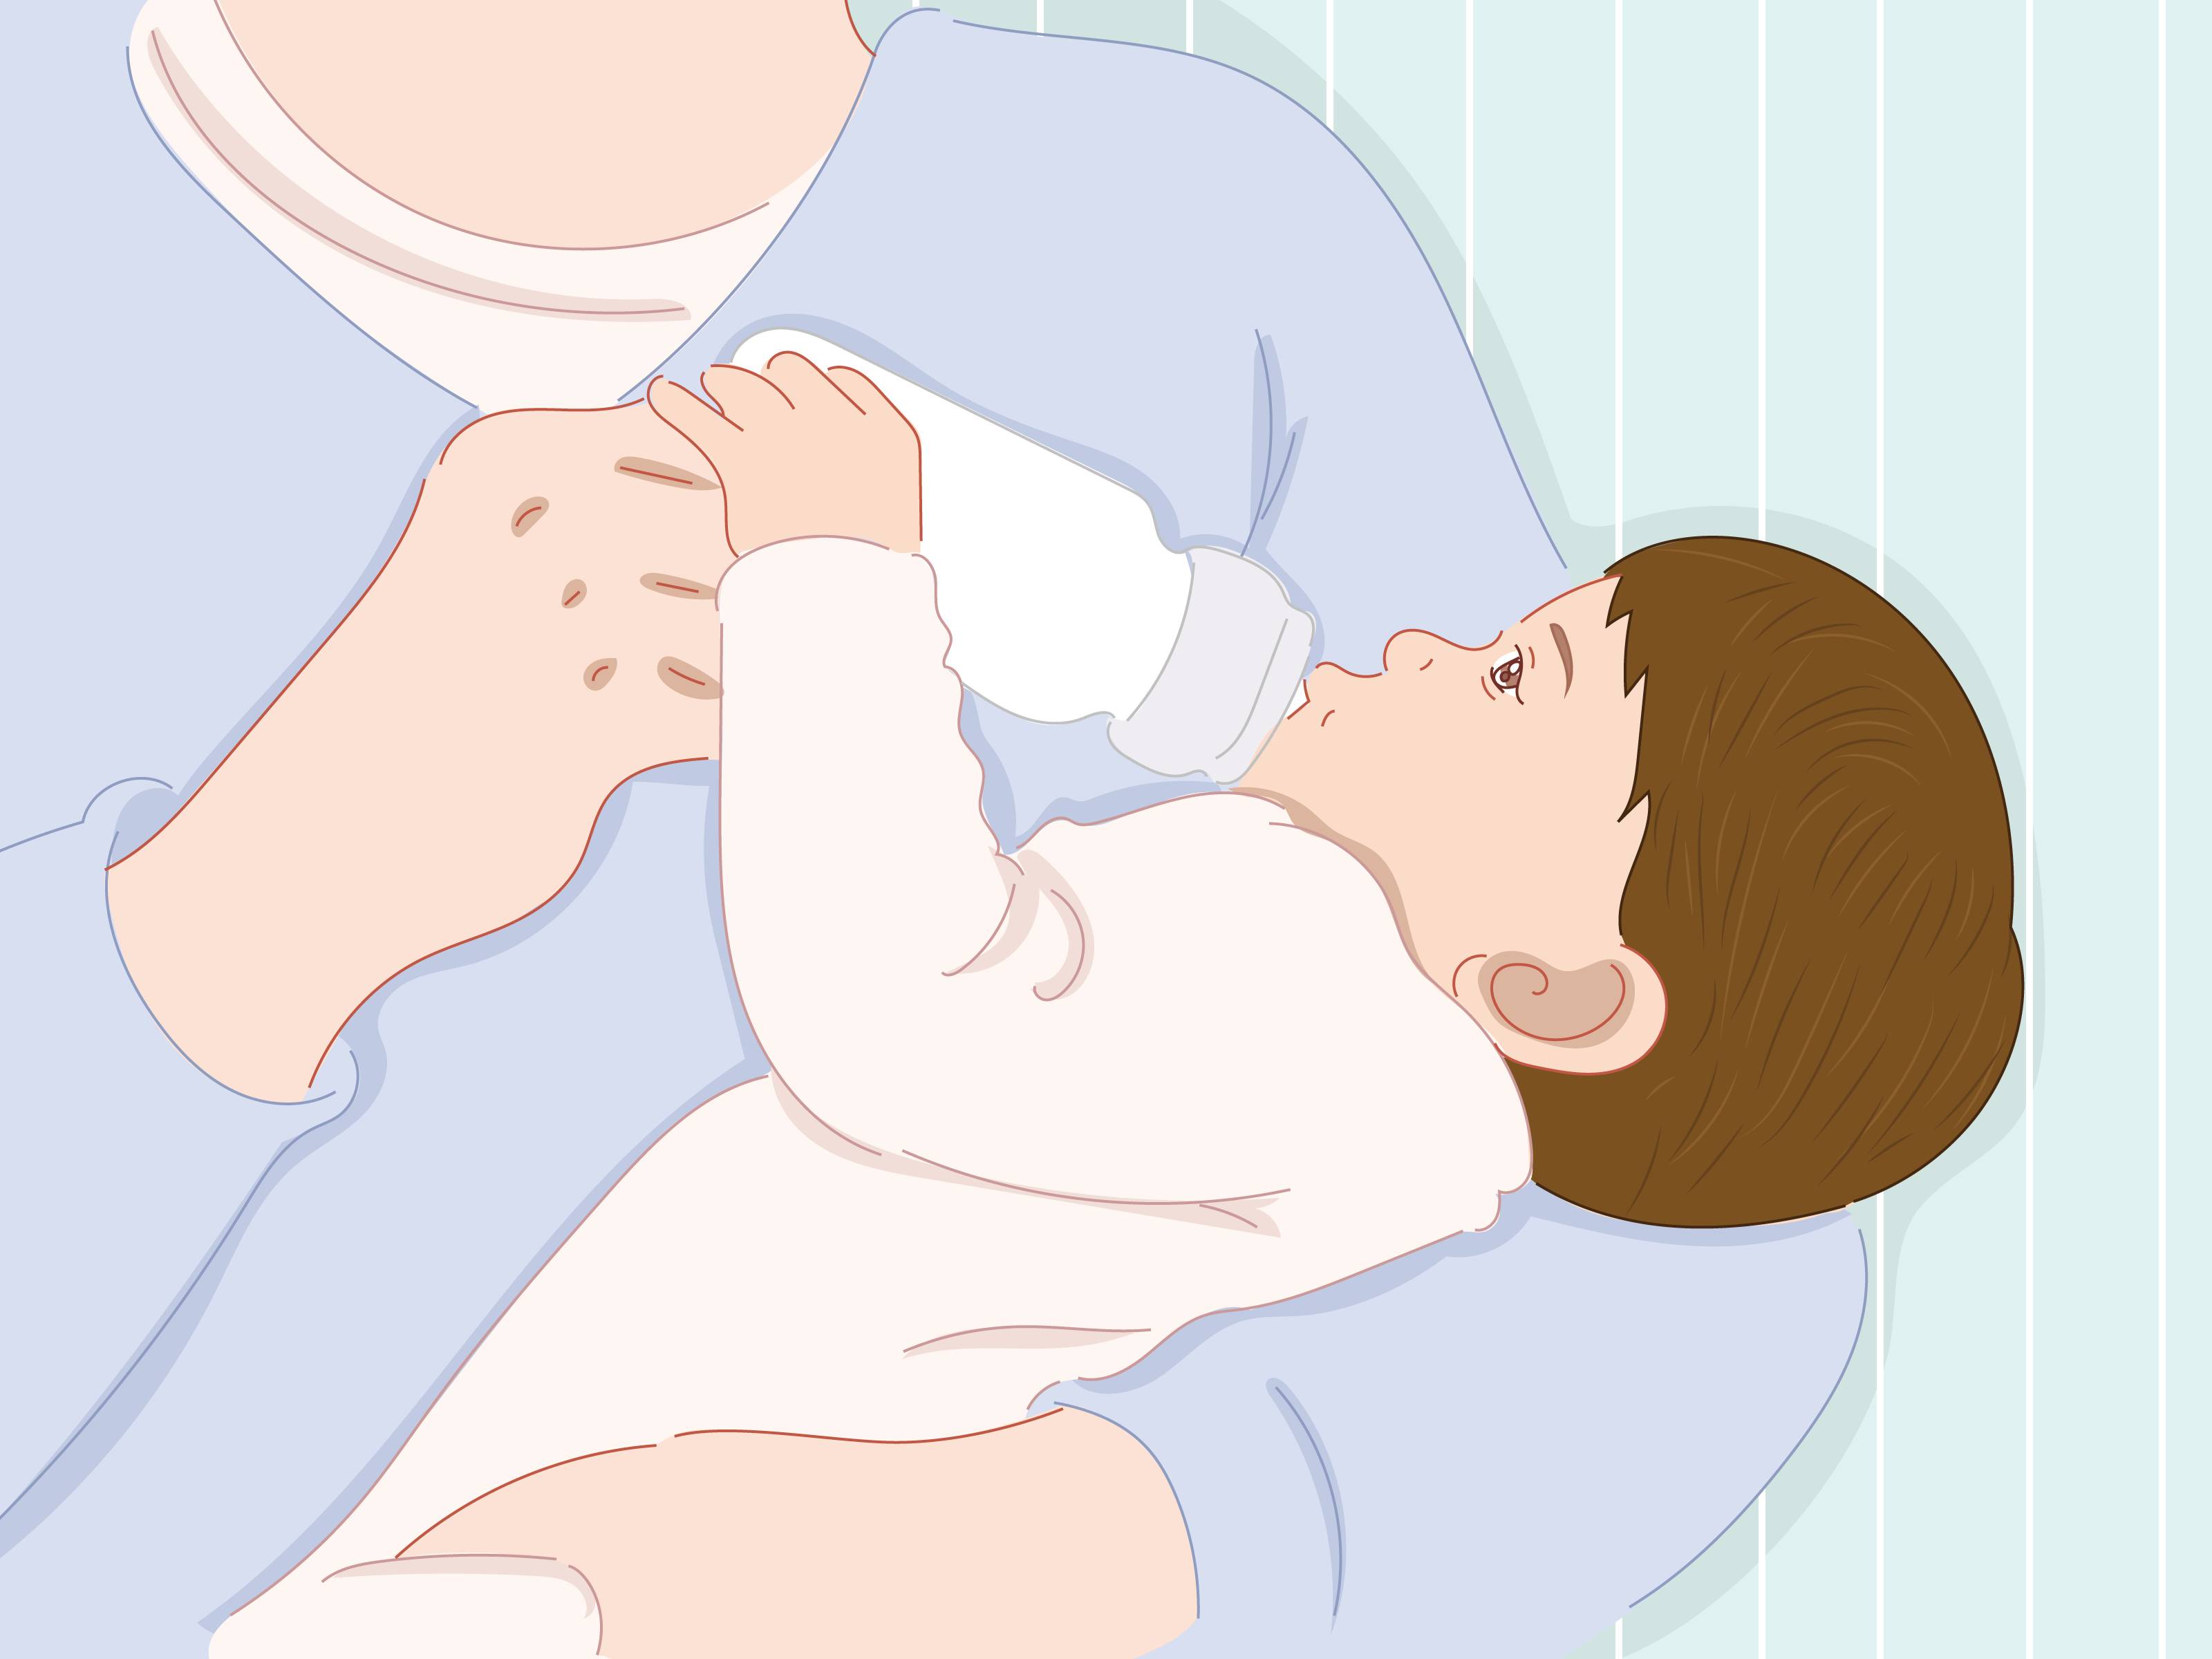 Как кормить новорожденного из бутылочки